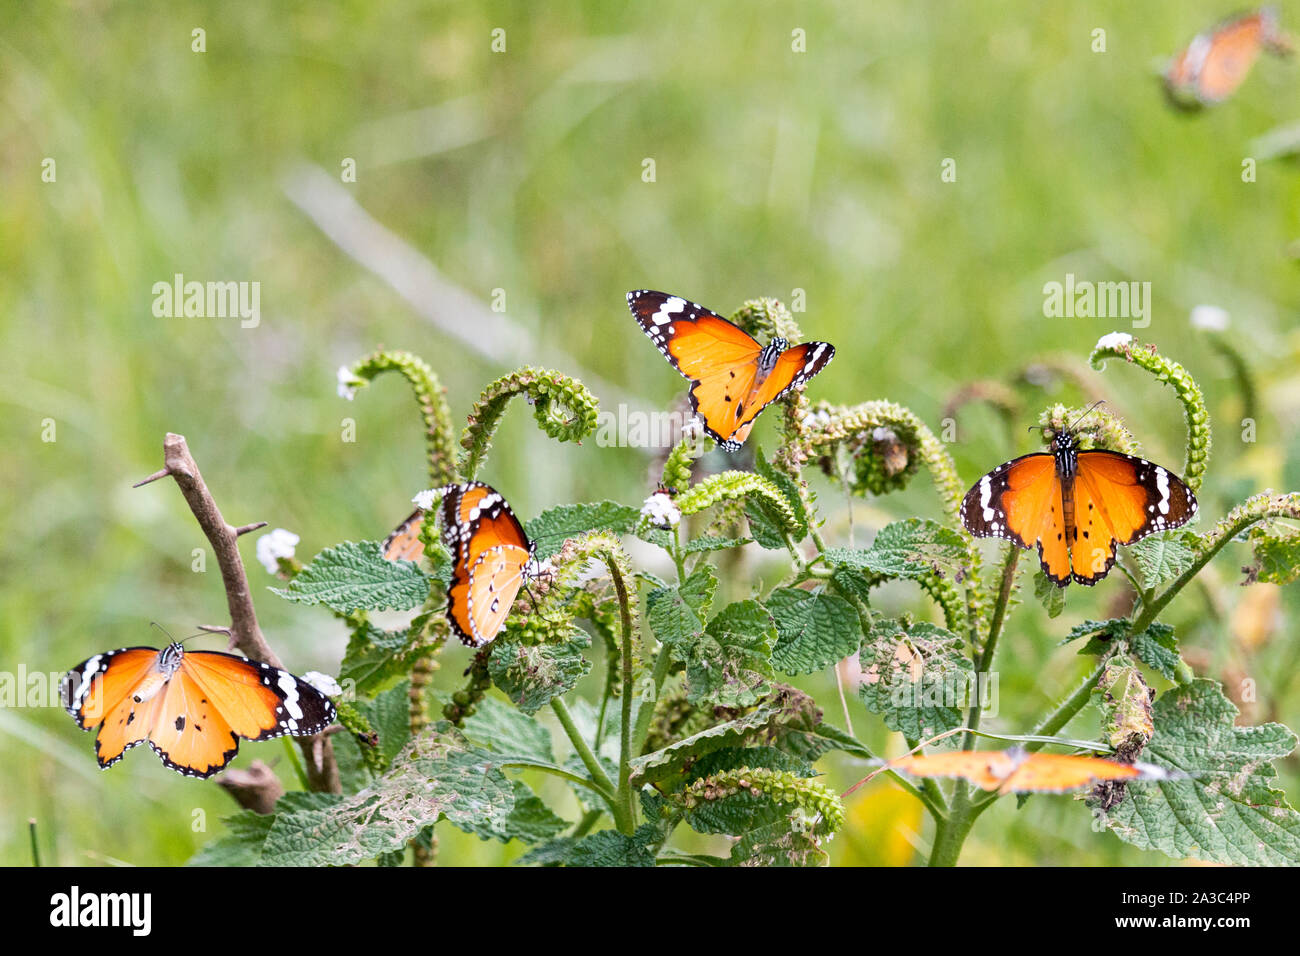 Orange Schmetterlinge fliegen und Fütterung auf eine grüne Pflanze im grünen Gras Feld um einen leeren See in Südindien - Tiruvannamalai 2019 Stockfoto